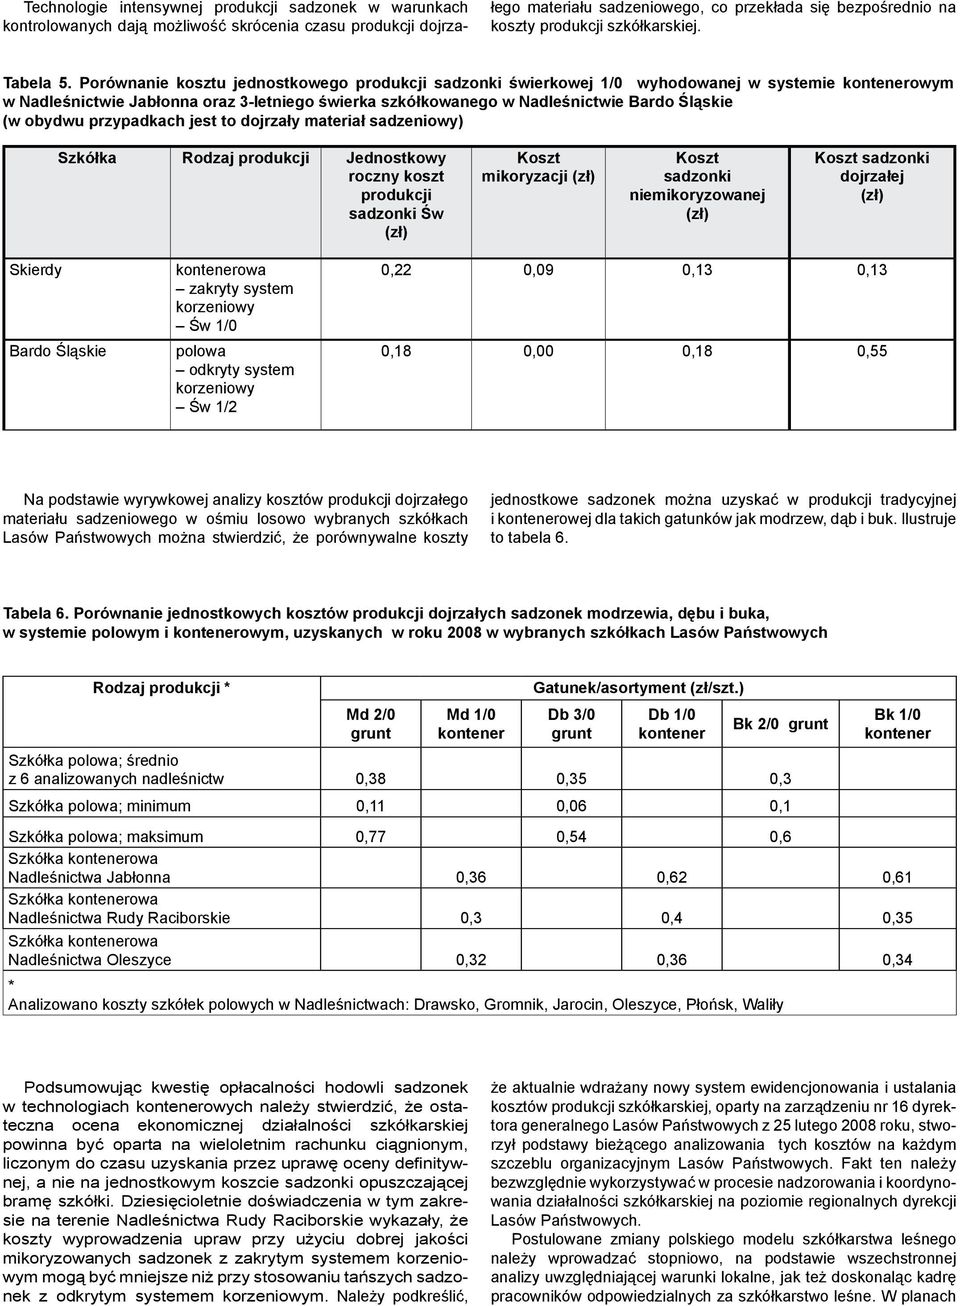 Porównanie kosztu jednostkowego produkcji sadzonki świerkowej 1/0 wyhodowanej w systemie kontenerowym w Nadleśnictwie Jabłonna oraz 3-letniego świerka szkółkowanego w Nadleśnictwie Bardo Śląskie (w